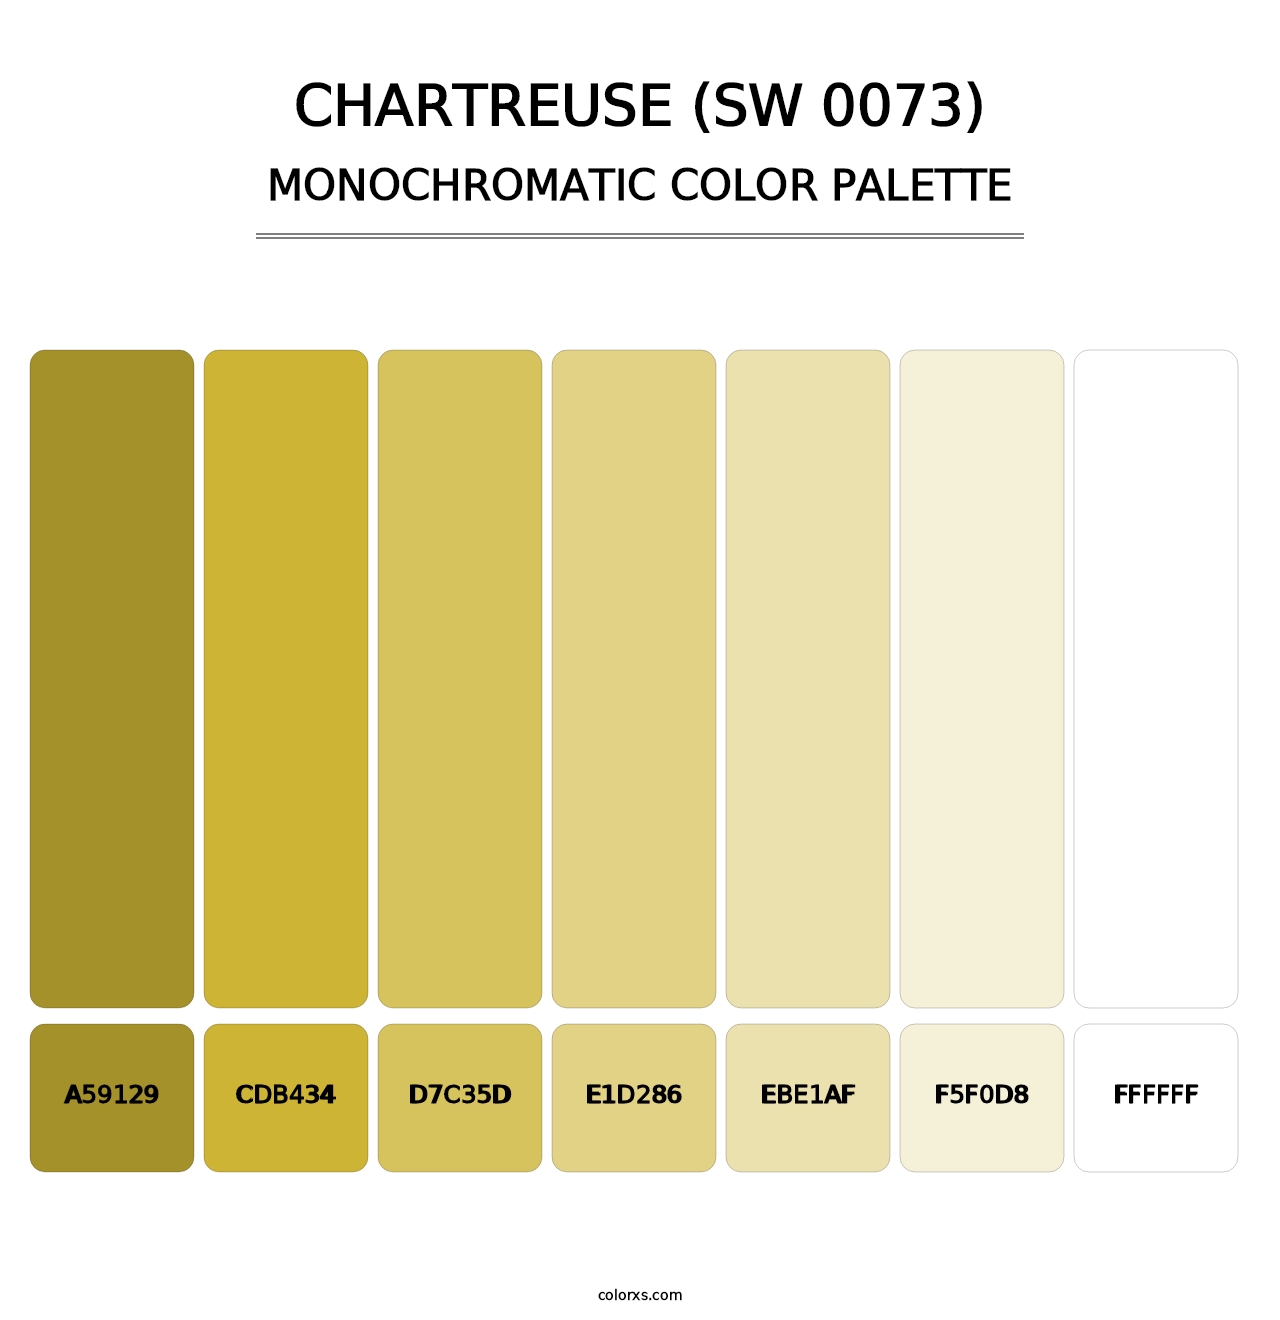 Chartreuse (SW 0073) - Monochromatic Color Palette